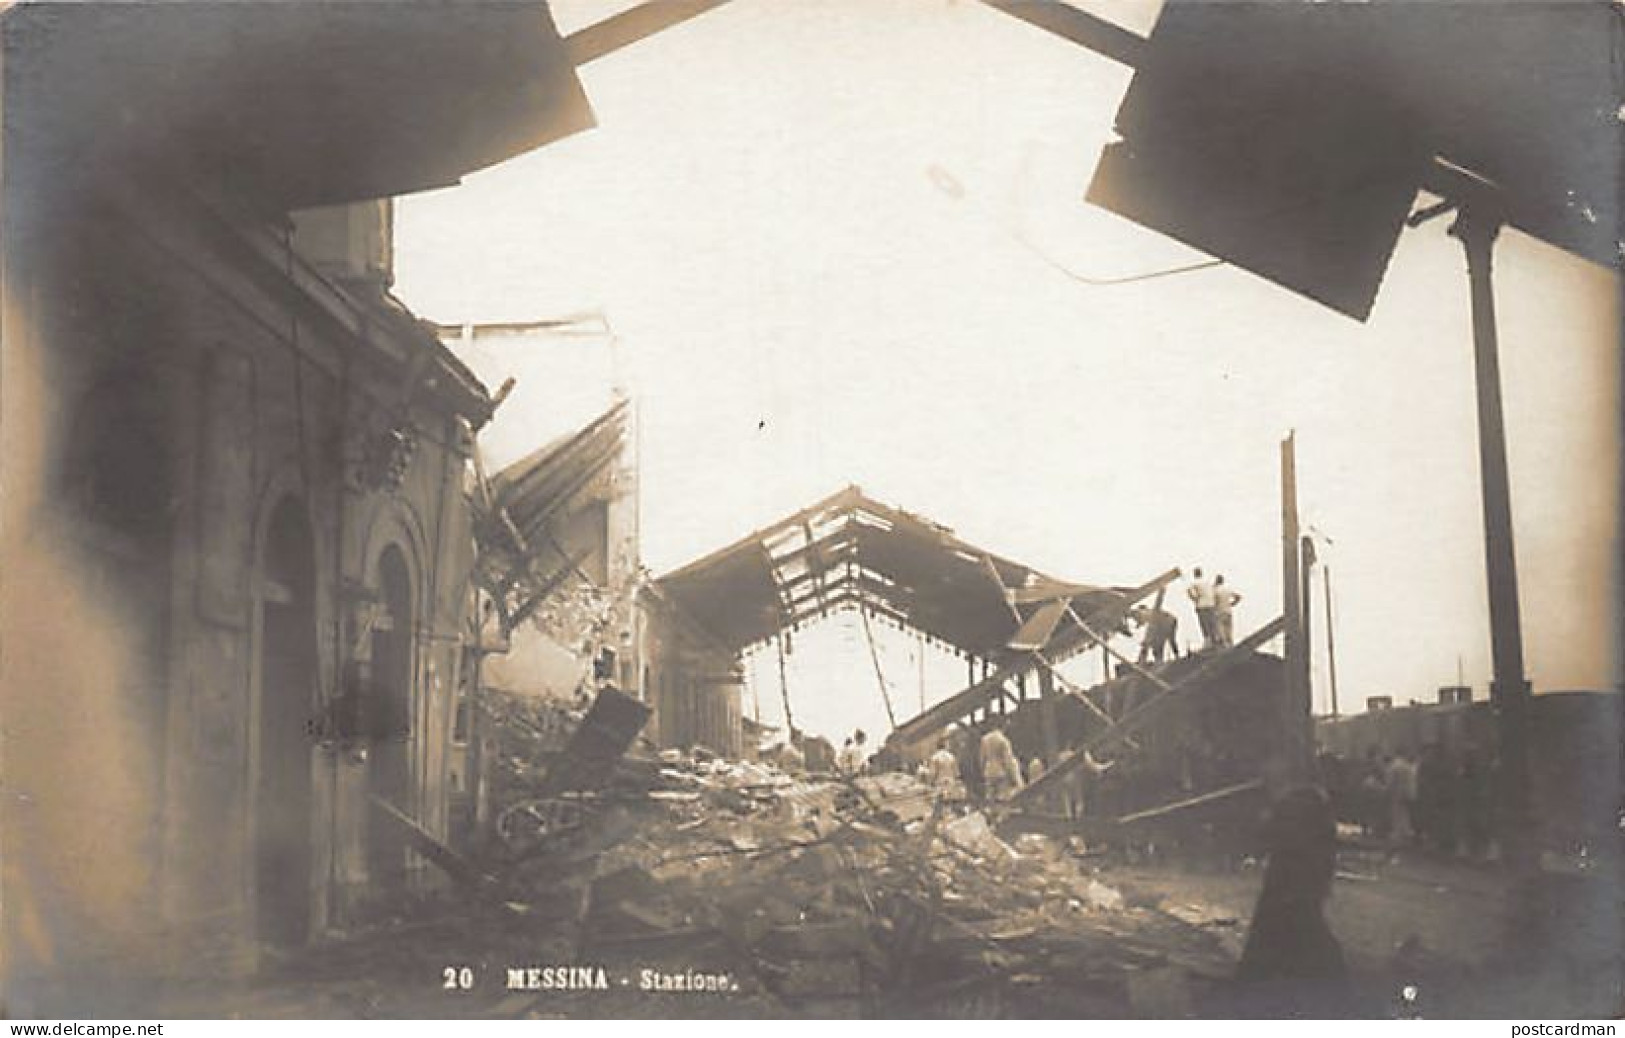 MESSINA - Stazione Dopo Il Terremoto - Messina